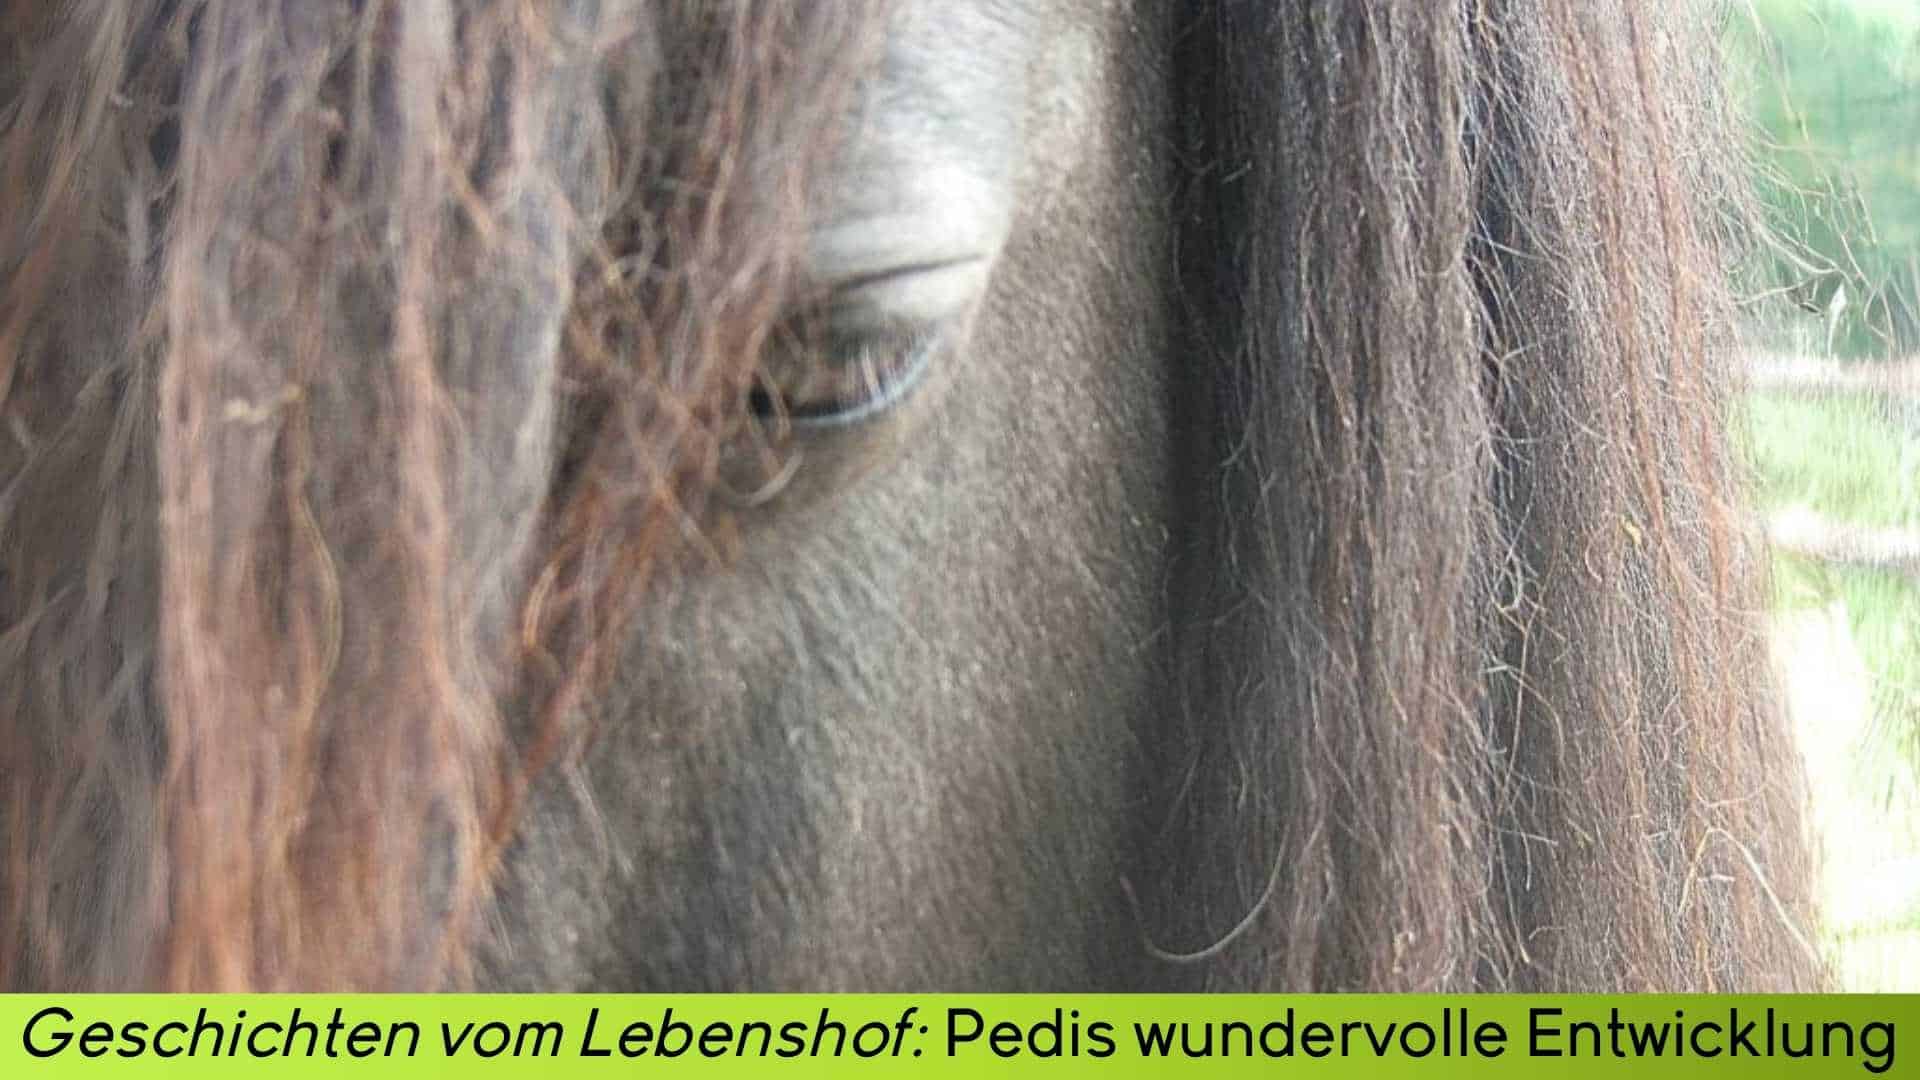 Großaufnahme Auge von Pedi Pony